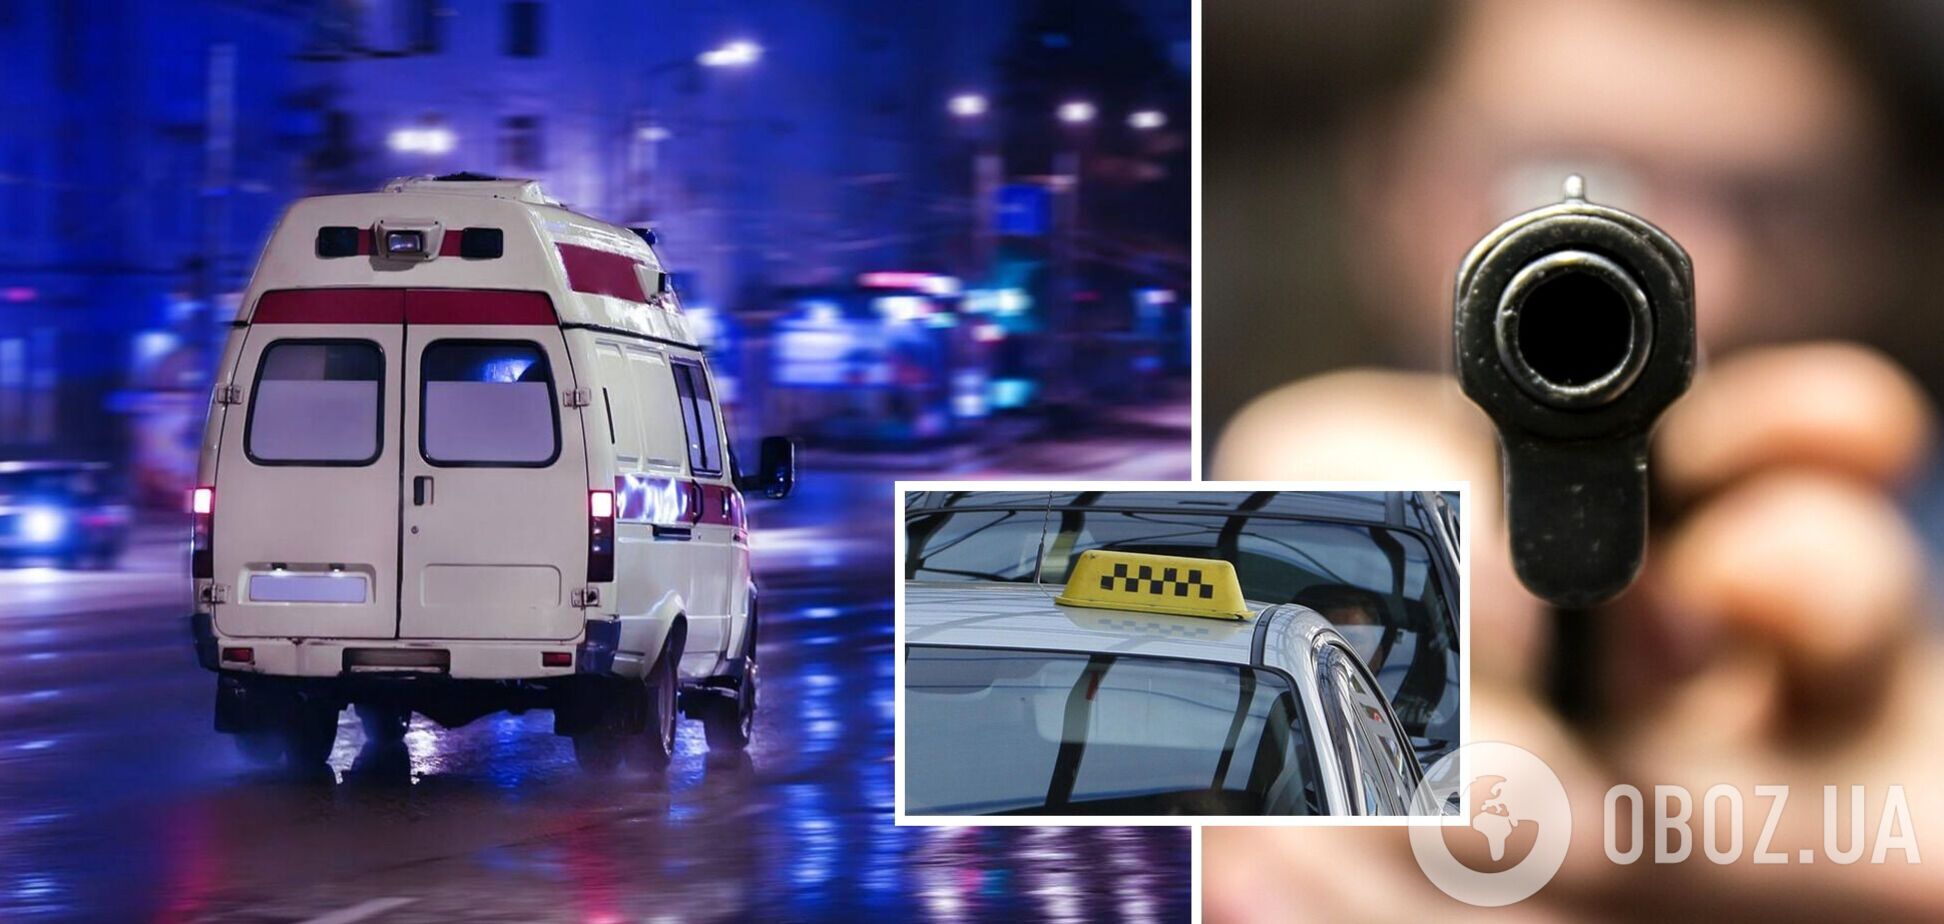 В Днепре пассажир такси выстрелил водителю в голову и скрылся: подробности трагедии. Фото 18+